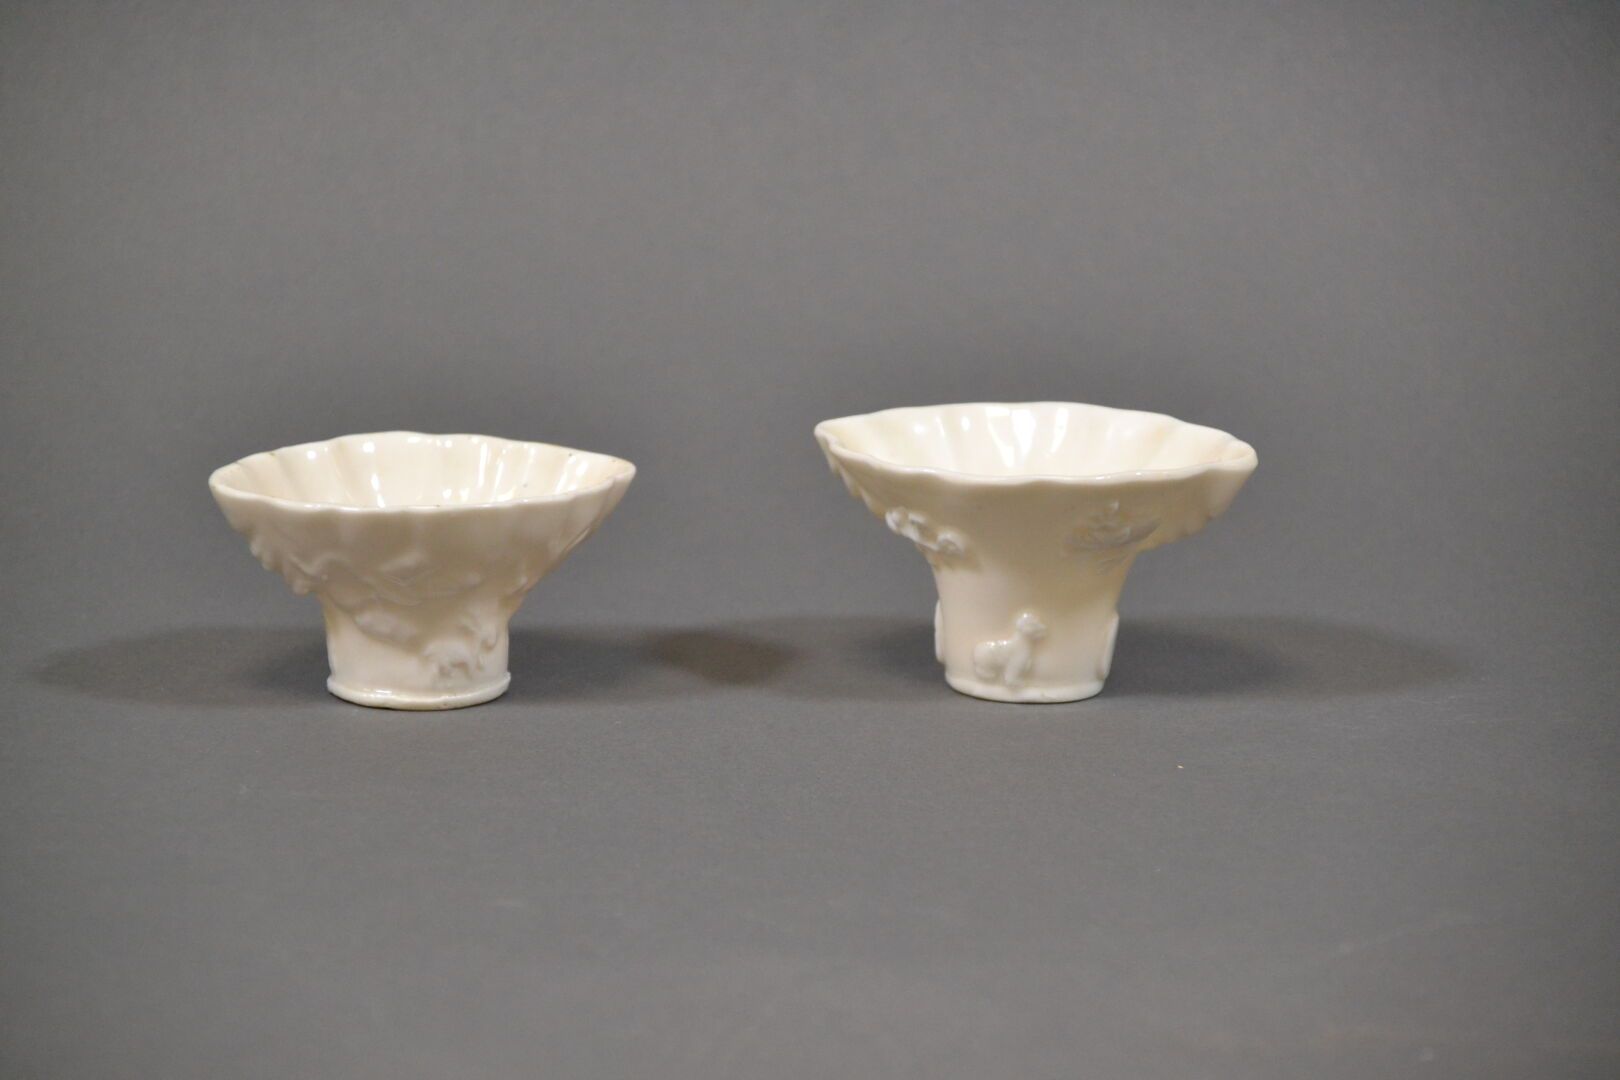 Null 中国，康熙时期
两件中国白珐琅烧酒碗，釉下模印虎、鹤、鹿和龙纹饰。 
长 9.5 和 9.8 厘米